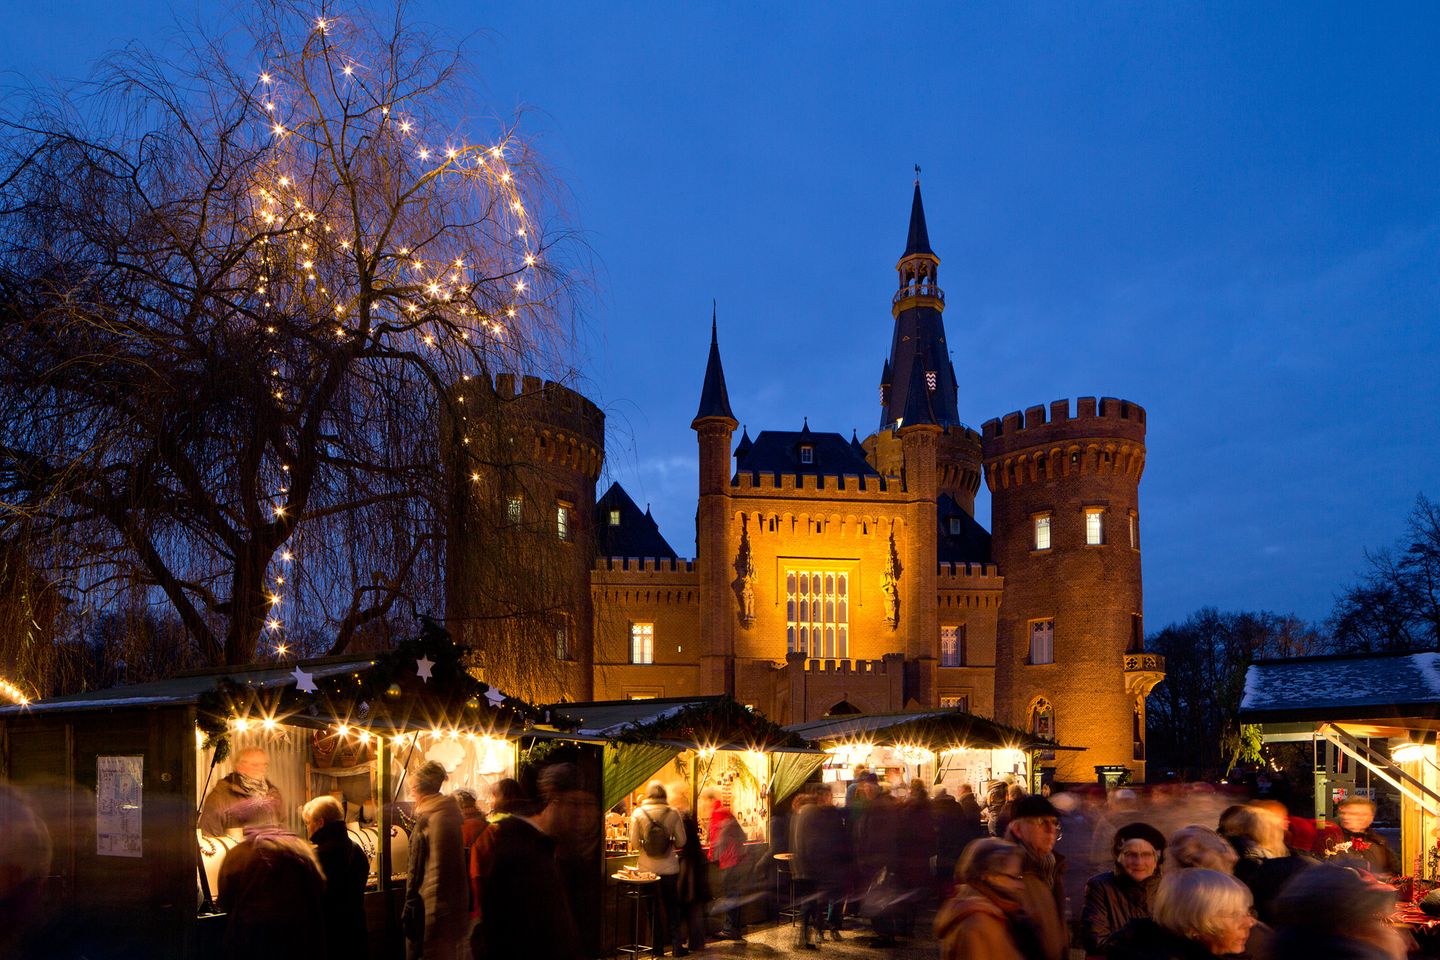 Weihnachtsmarkt auf Schloss Moyland